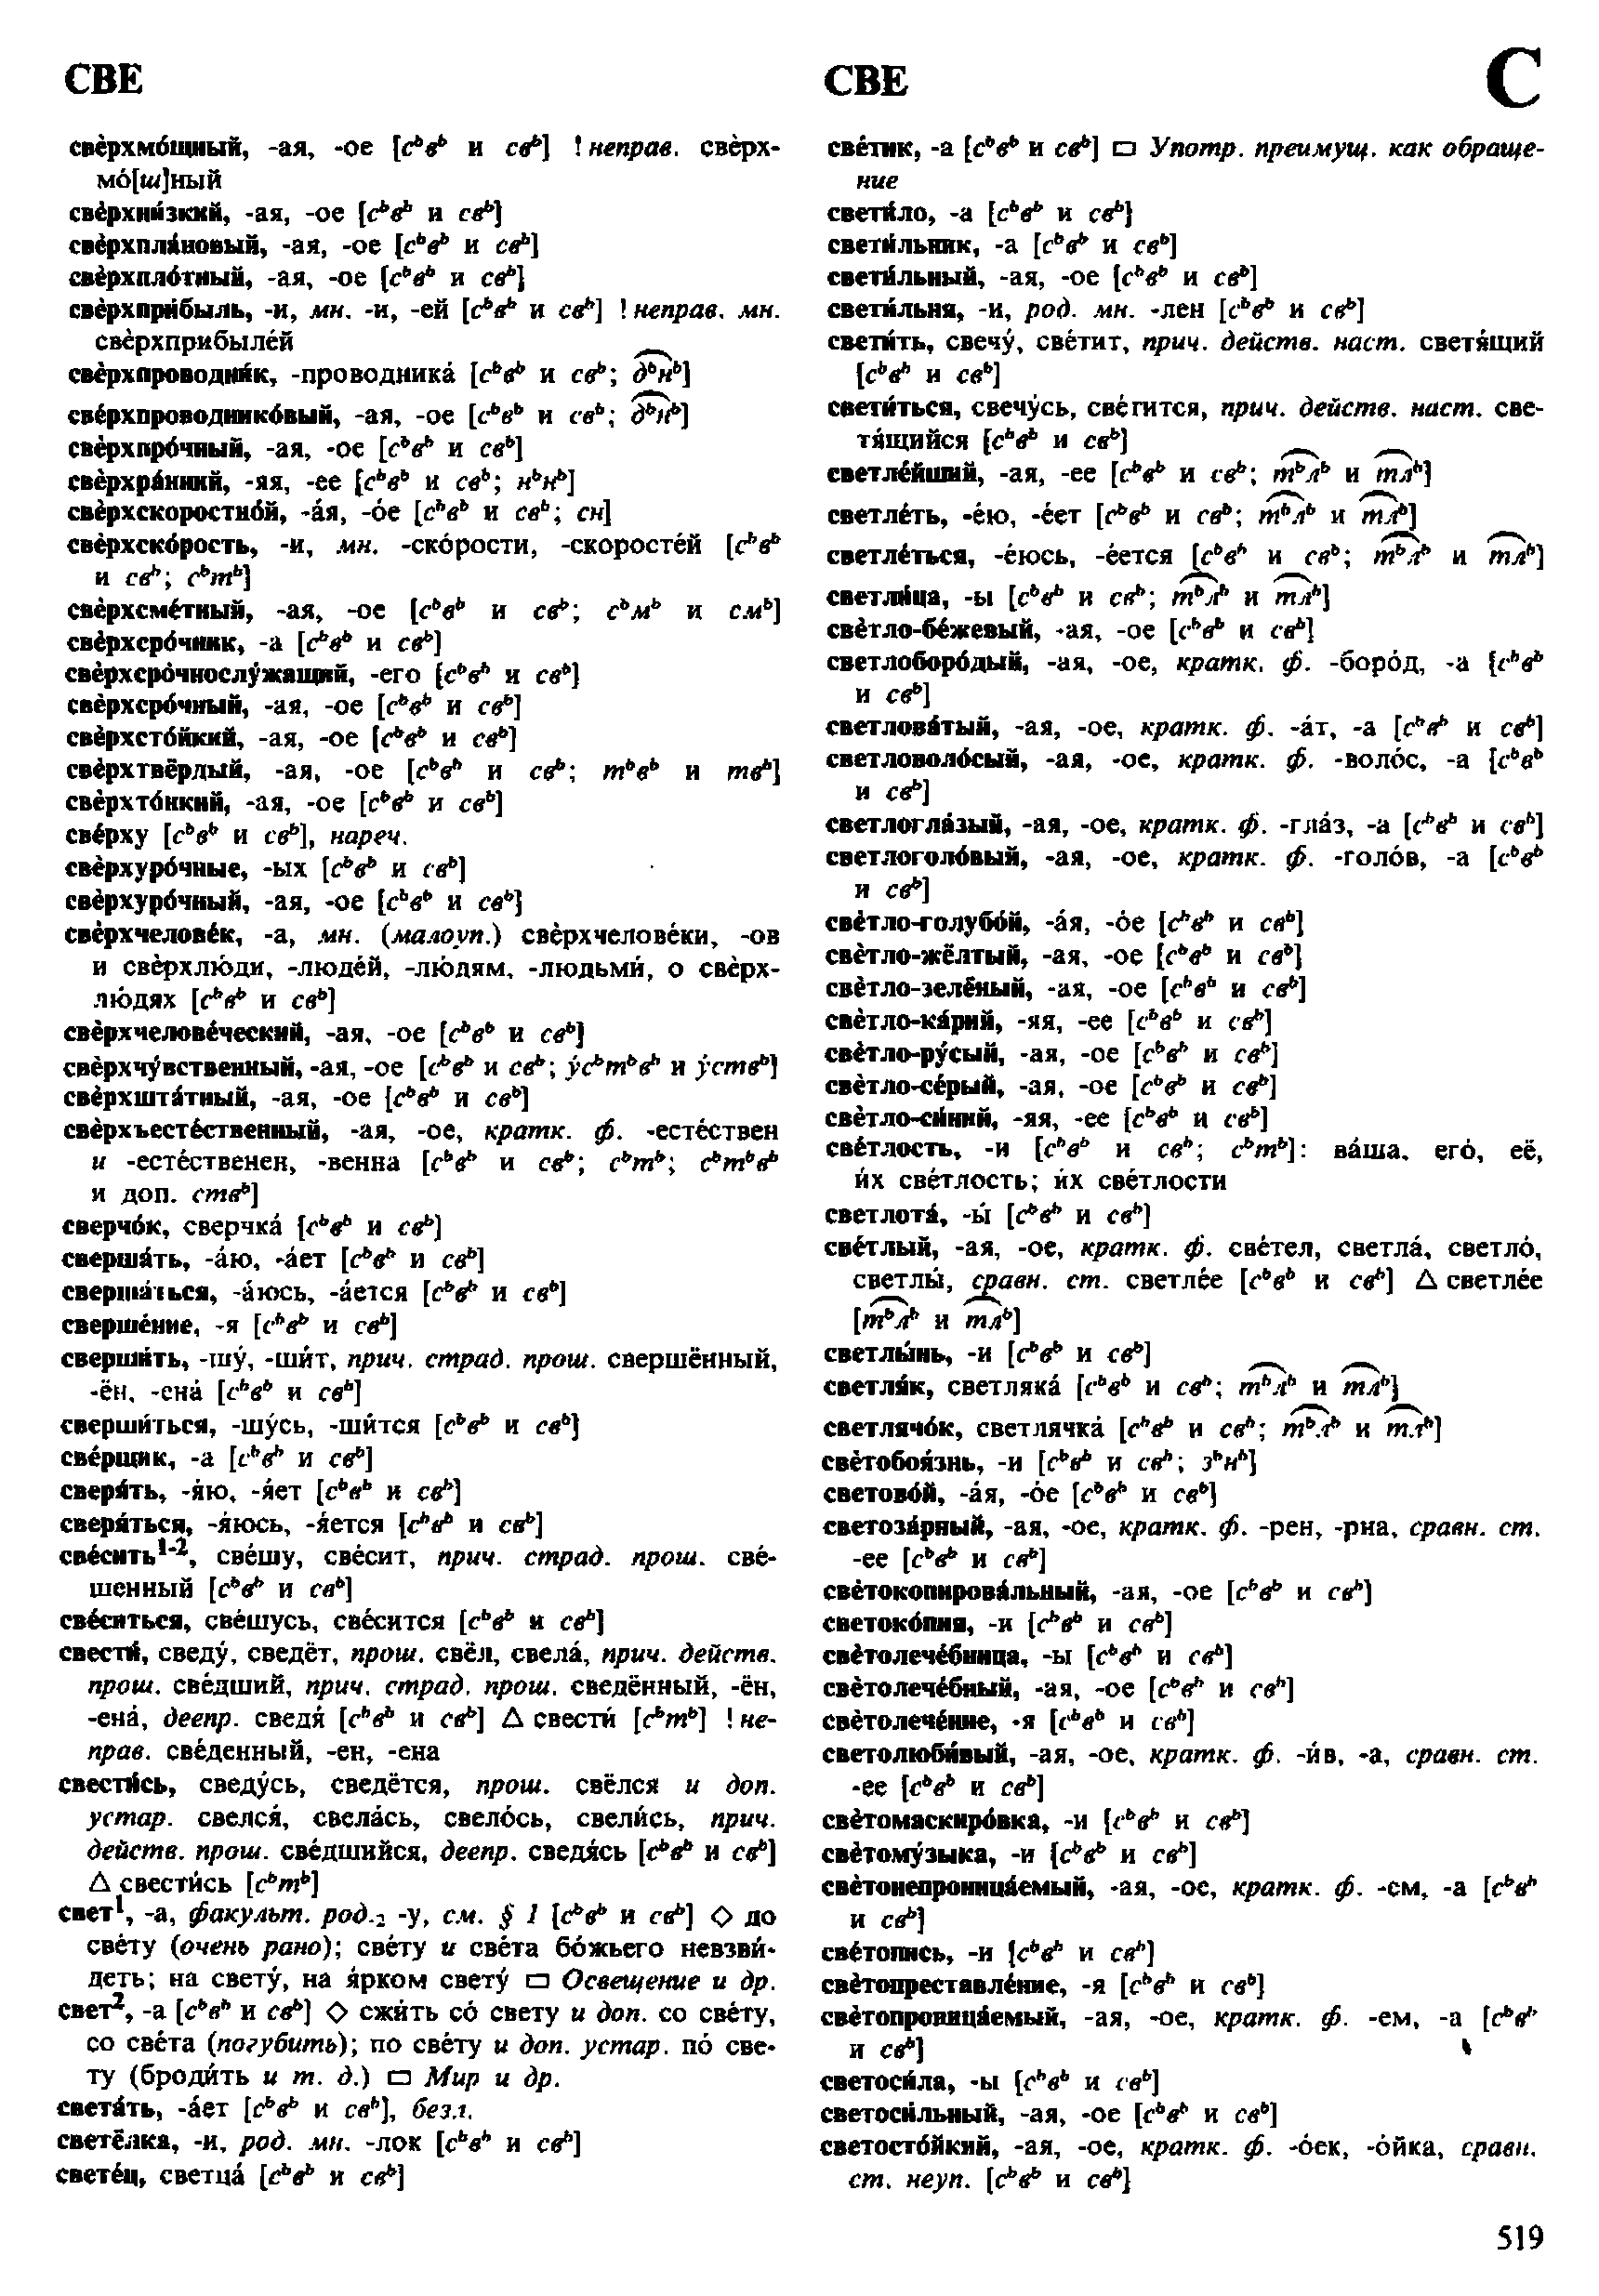 Фотокопия pdf / скан страницы 519 орфоэпического словаря под редакцией Аванесова (4 издание, 1988 год)